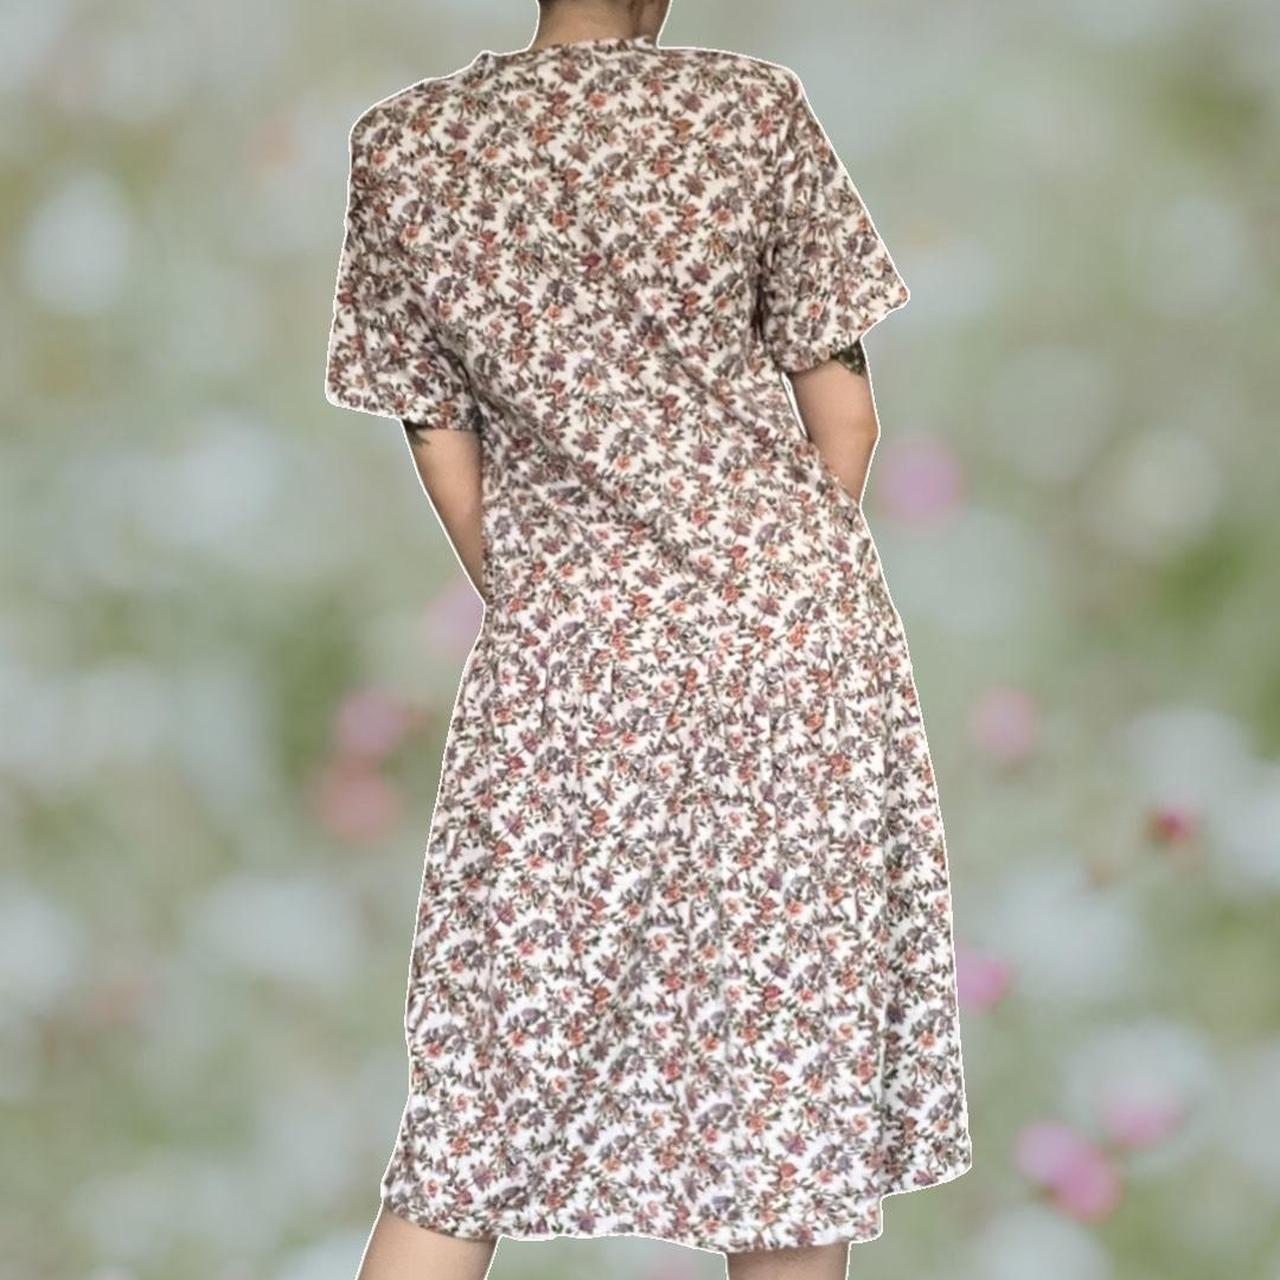 Product Image 3 - 80s floral drop-waist dress

vintage Lauren